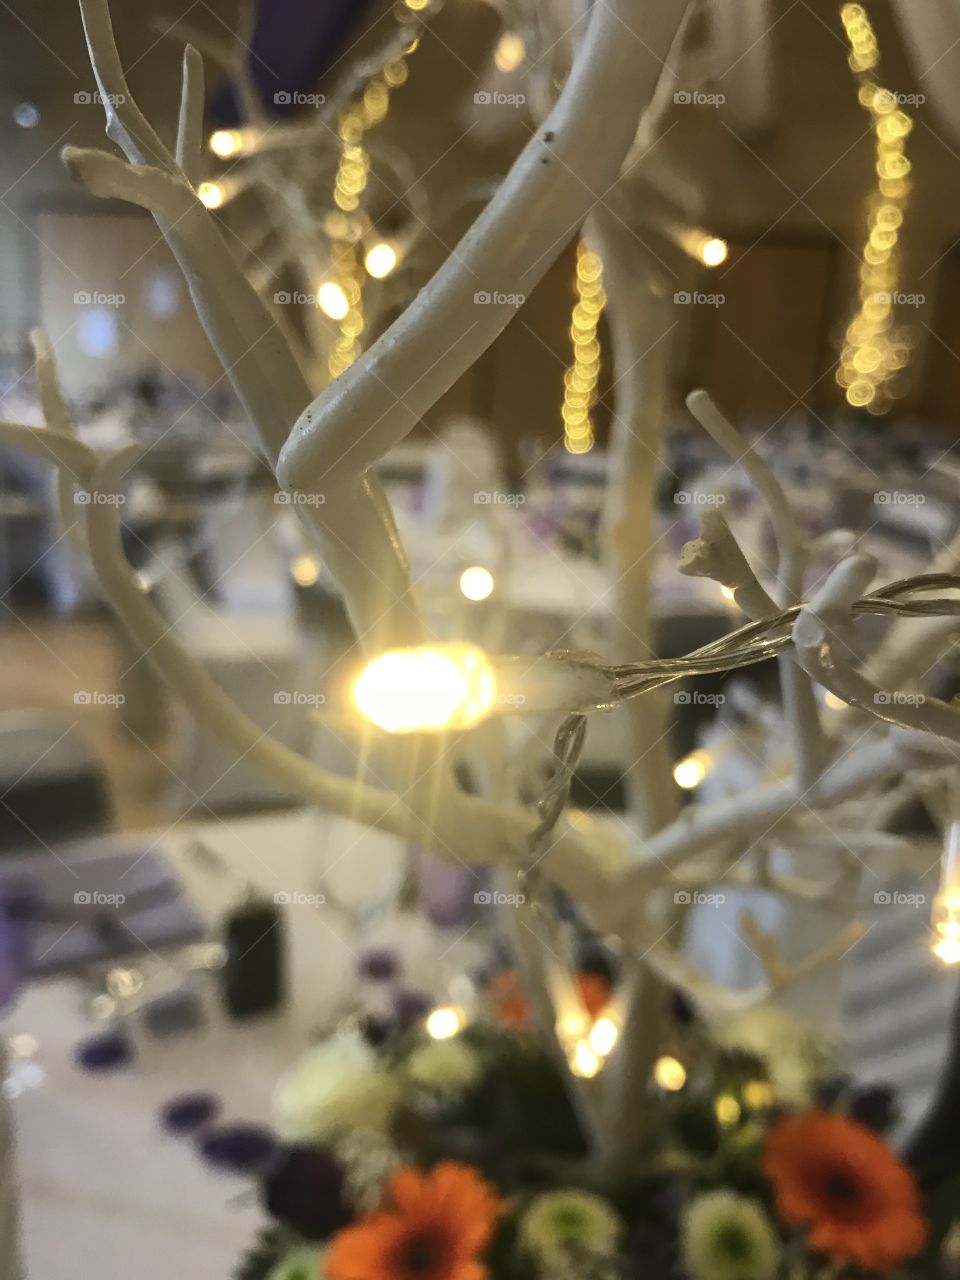 Closeup of a lit up table decoration centre piece.